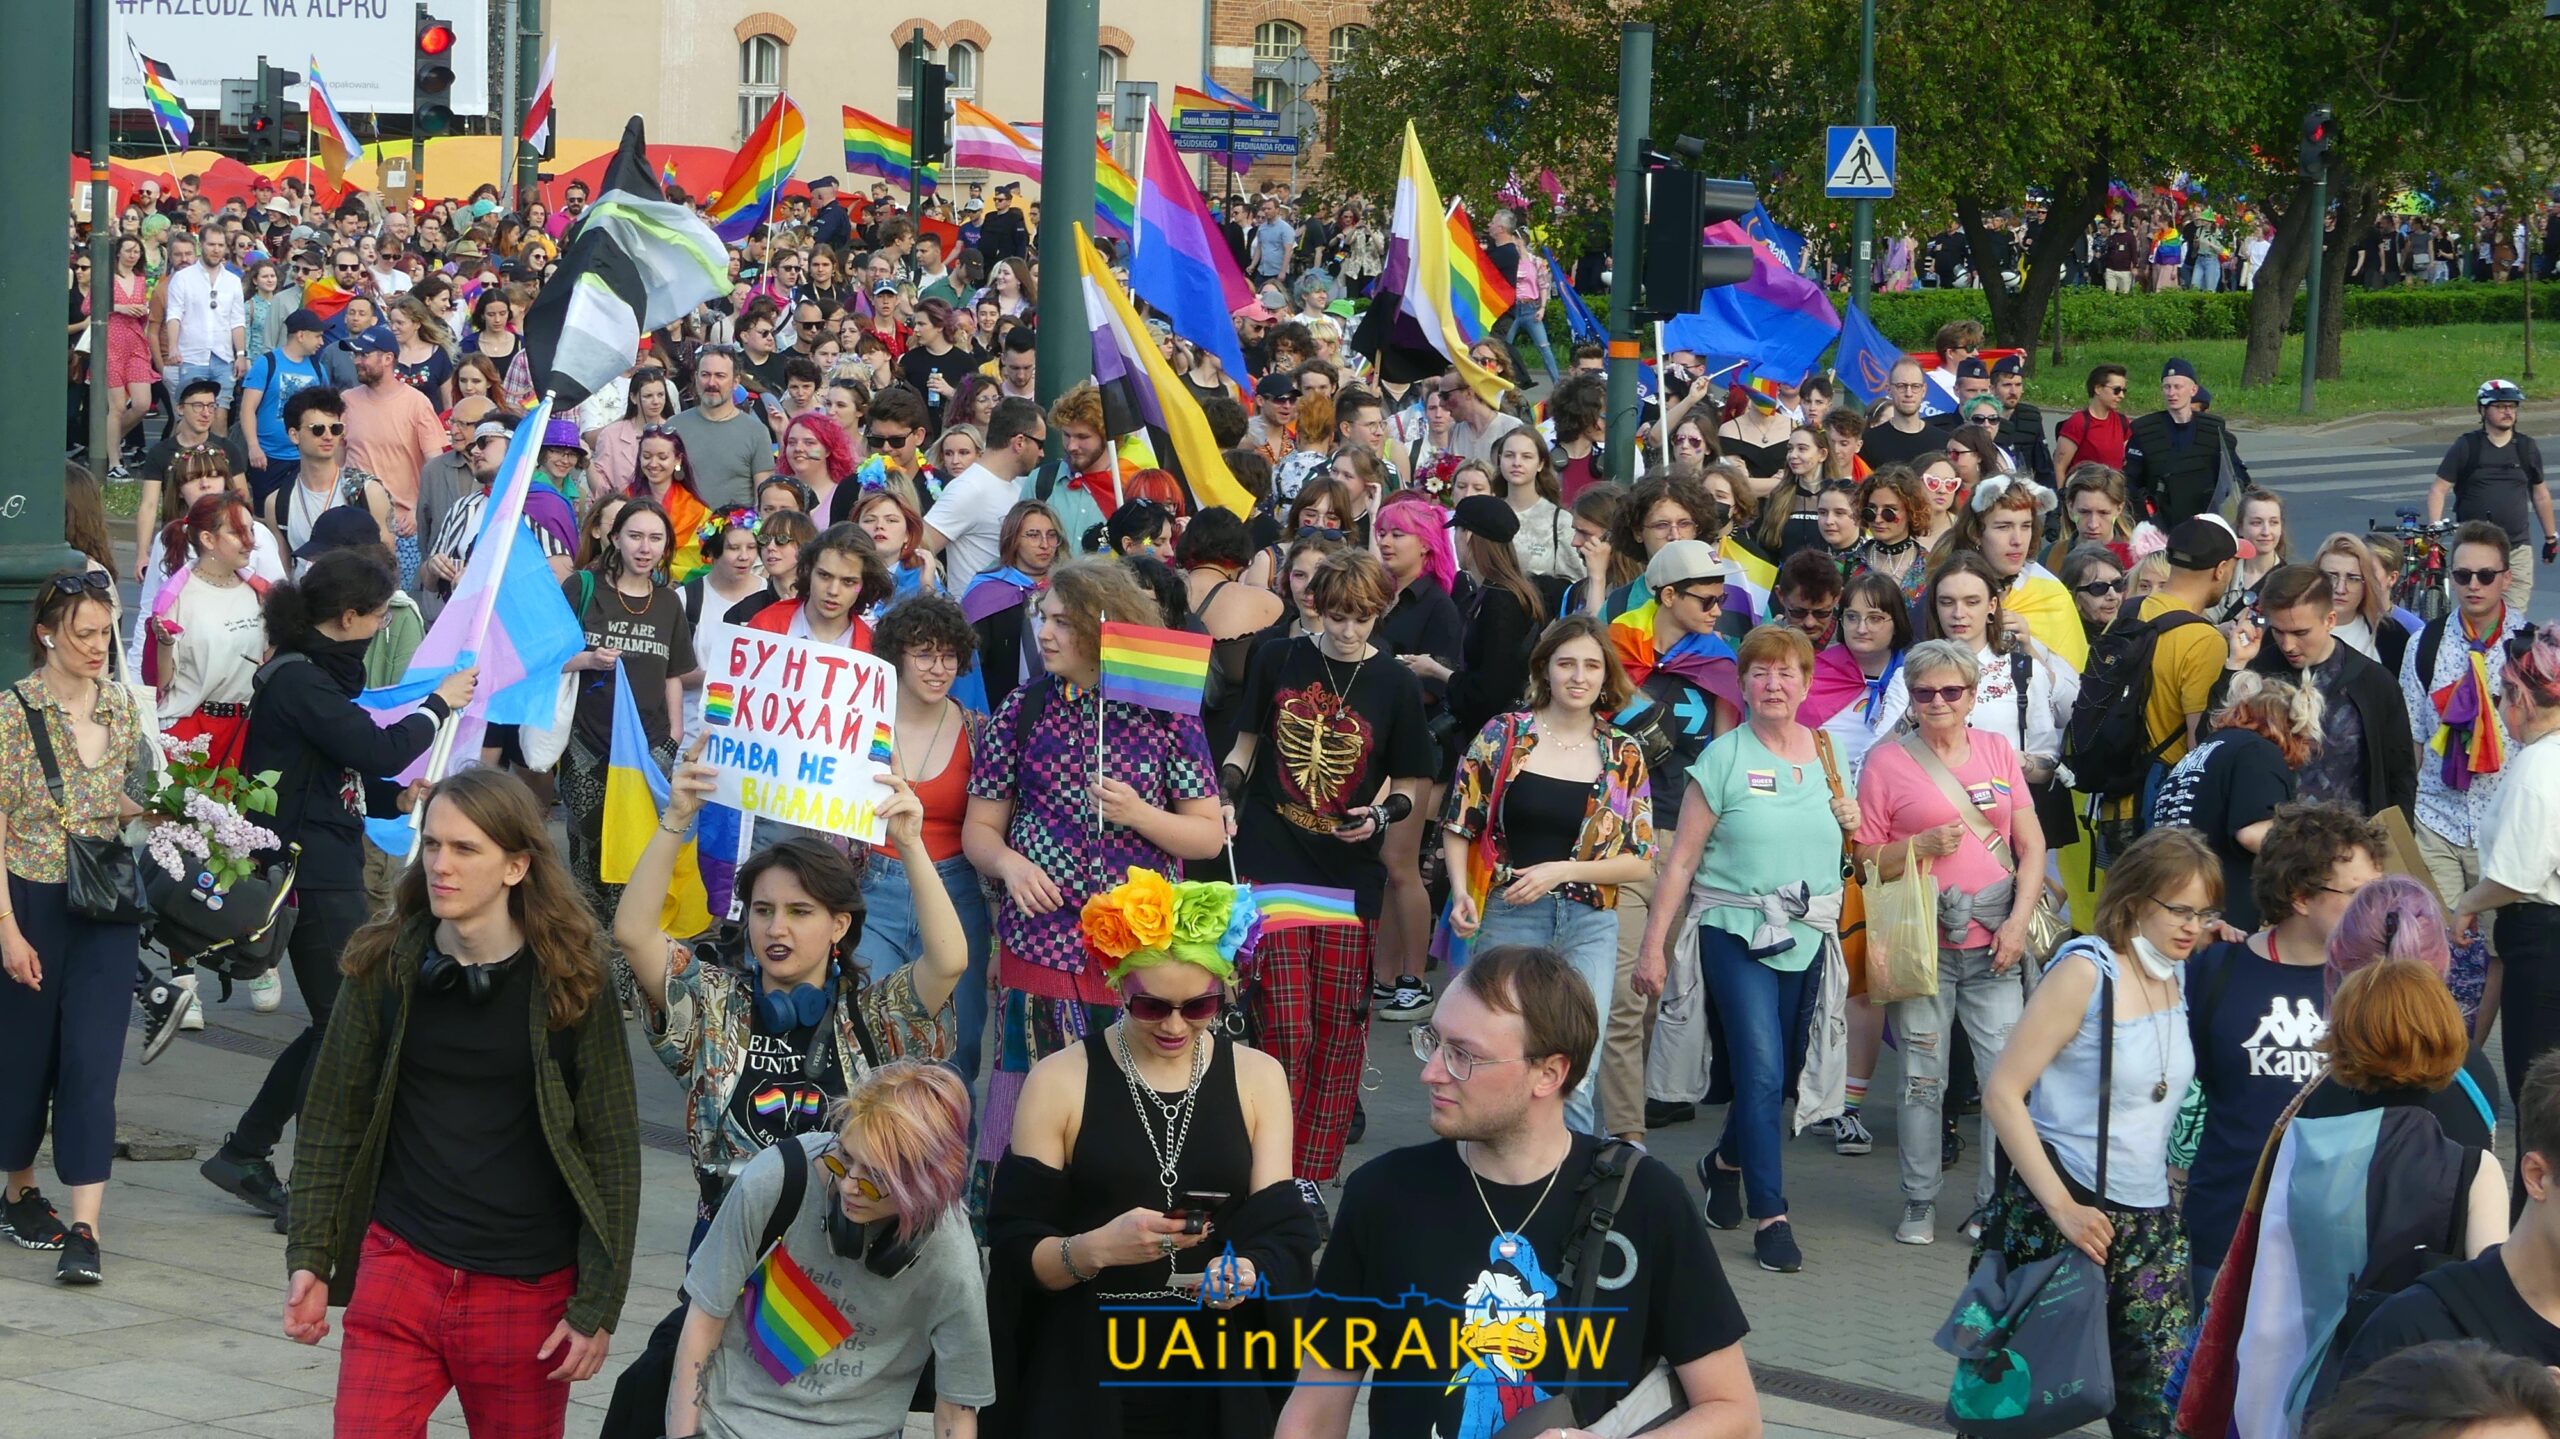 Кохання, рівність, толерантність: як пройшов Марш рівності в Кракові [ФОТО] 36 scaled